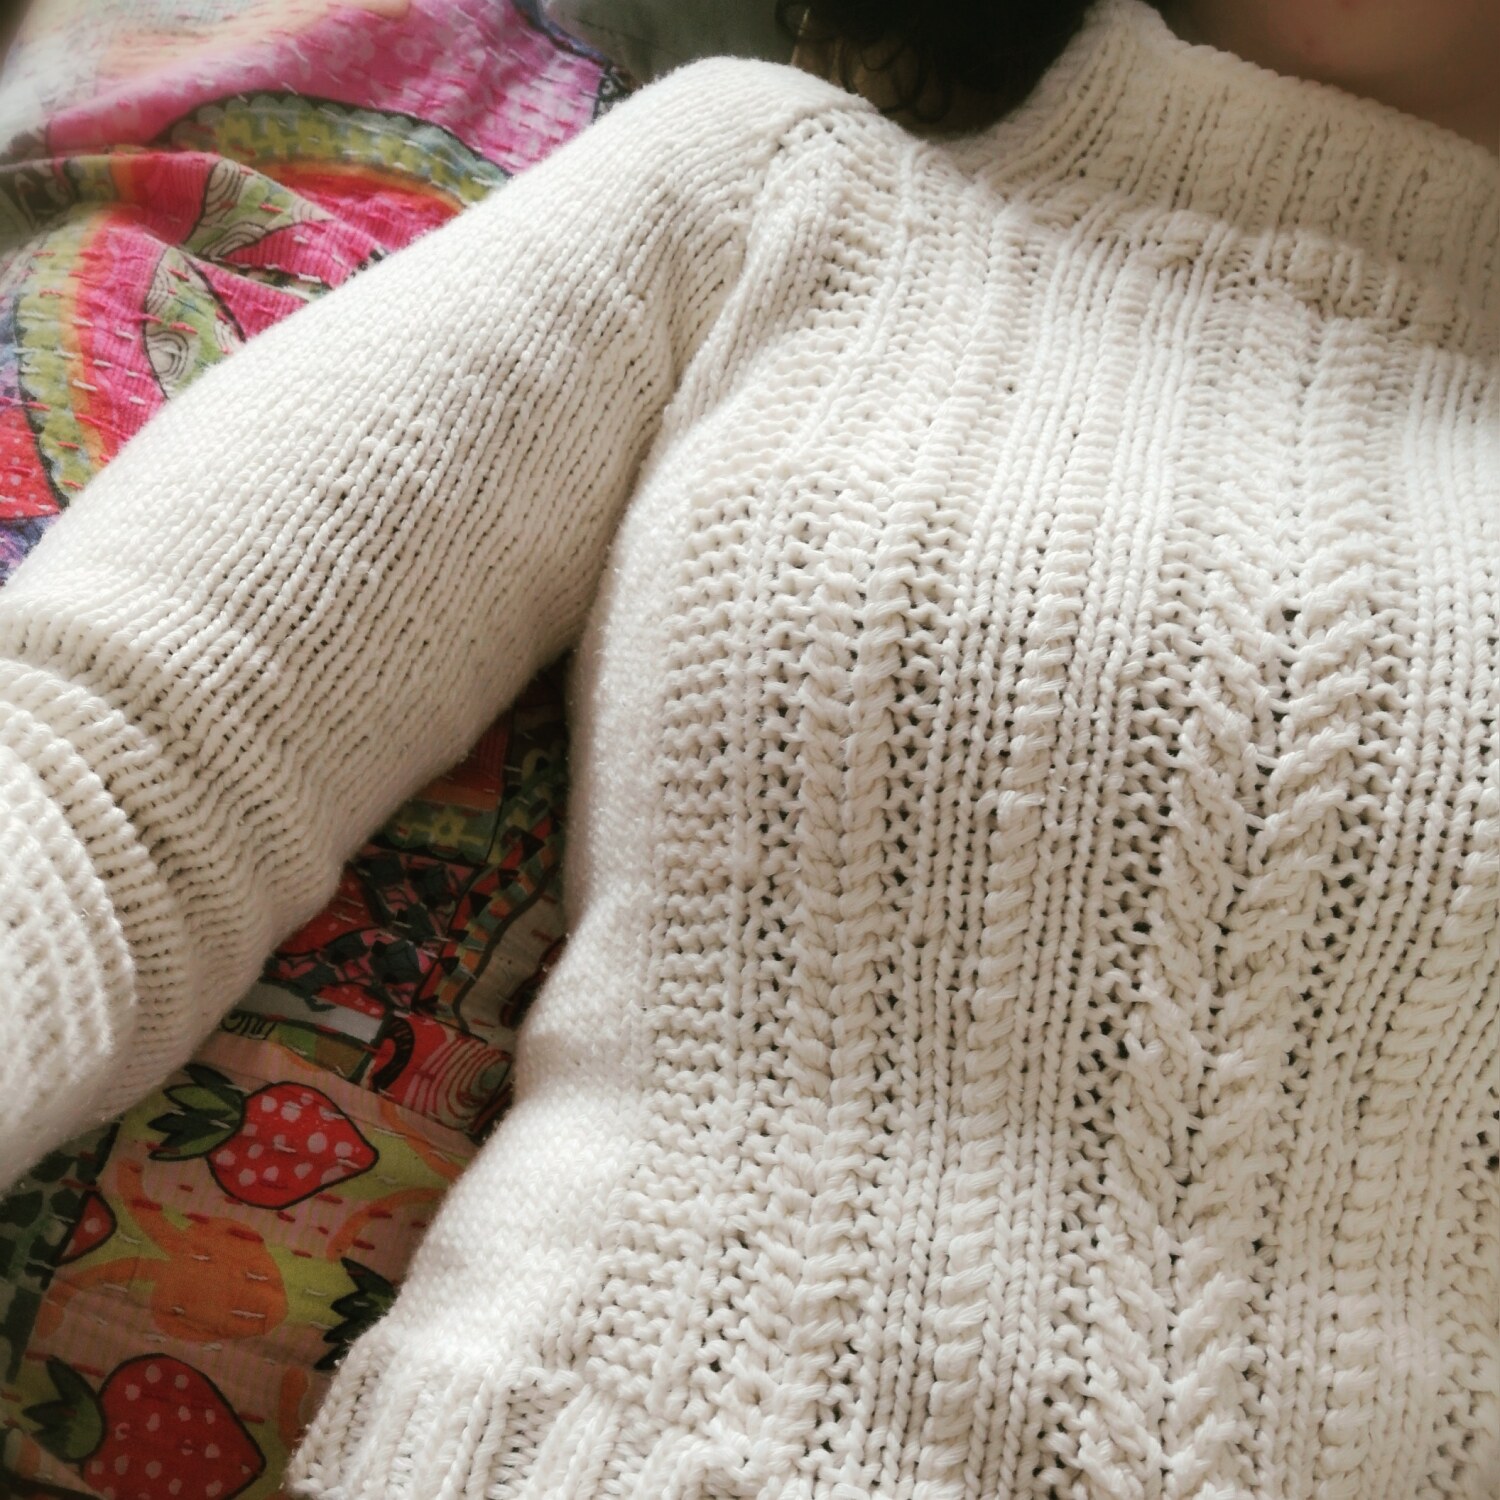 Irish rover knitted sweater